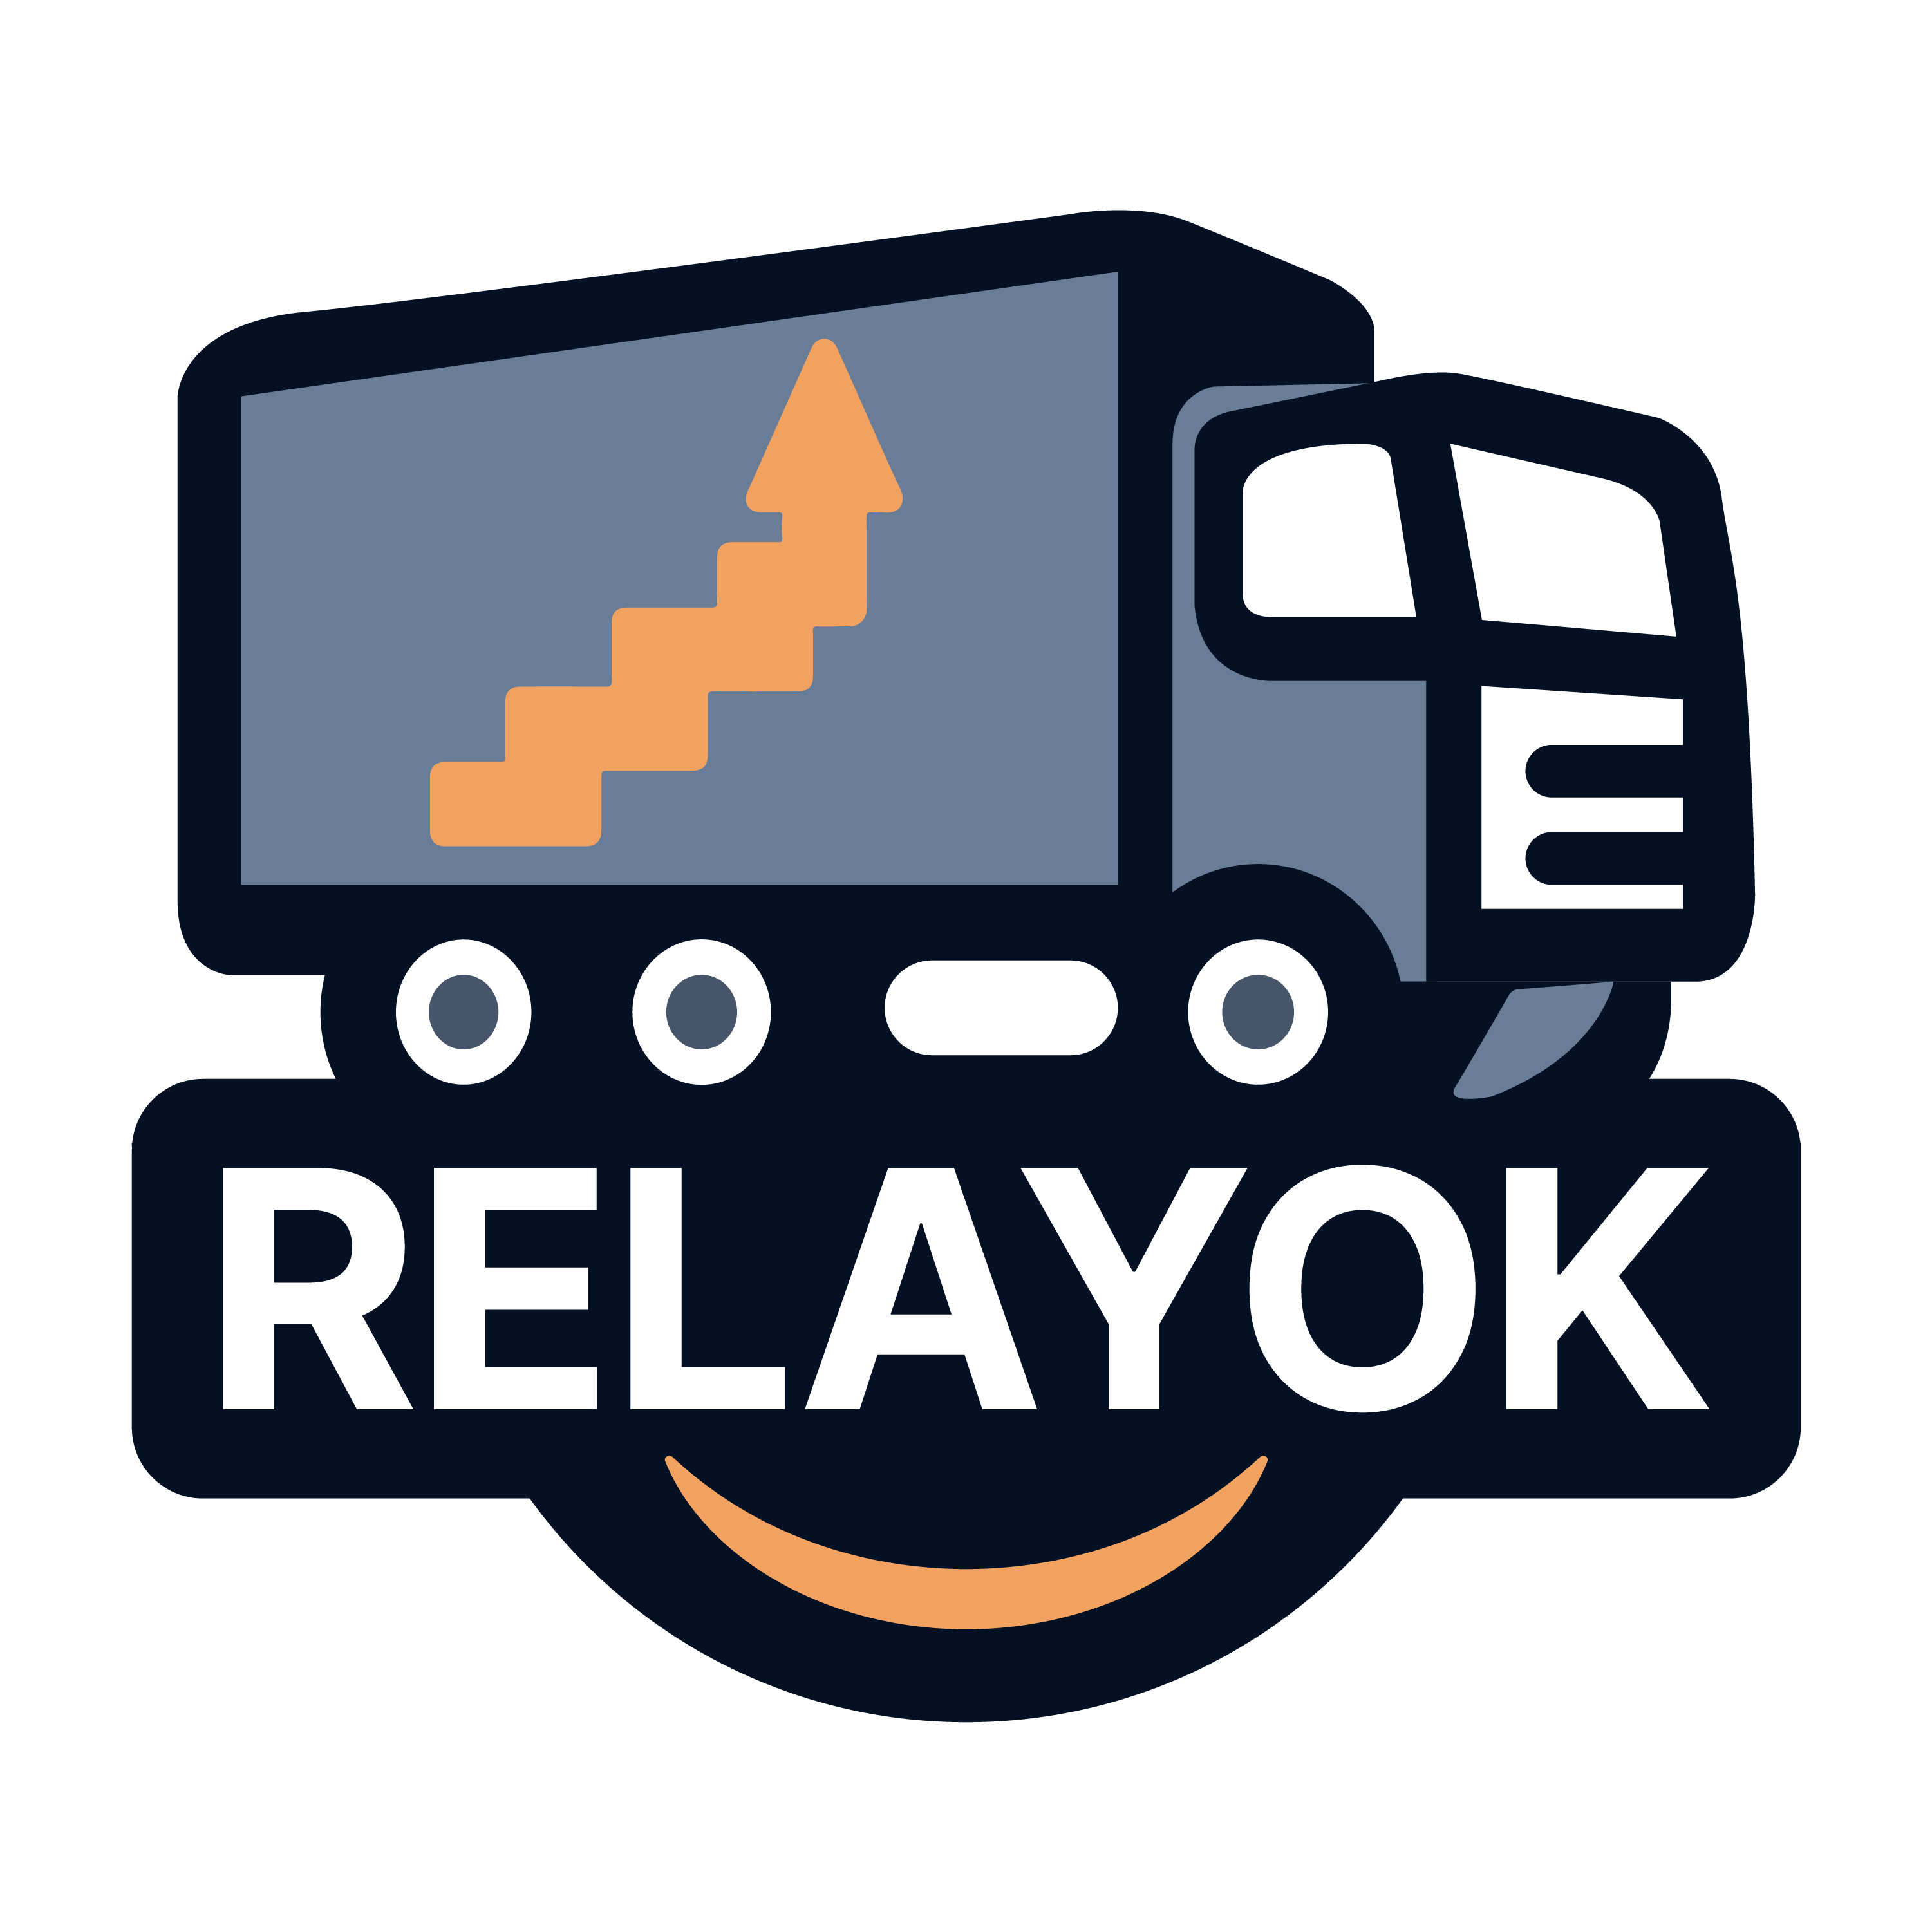 Relay ok Logo